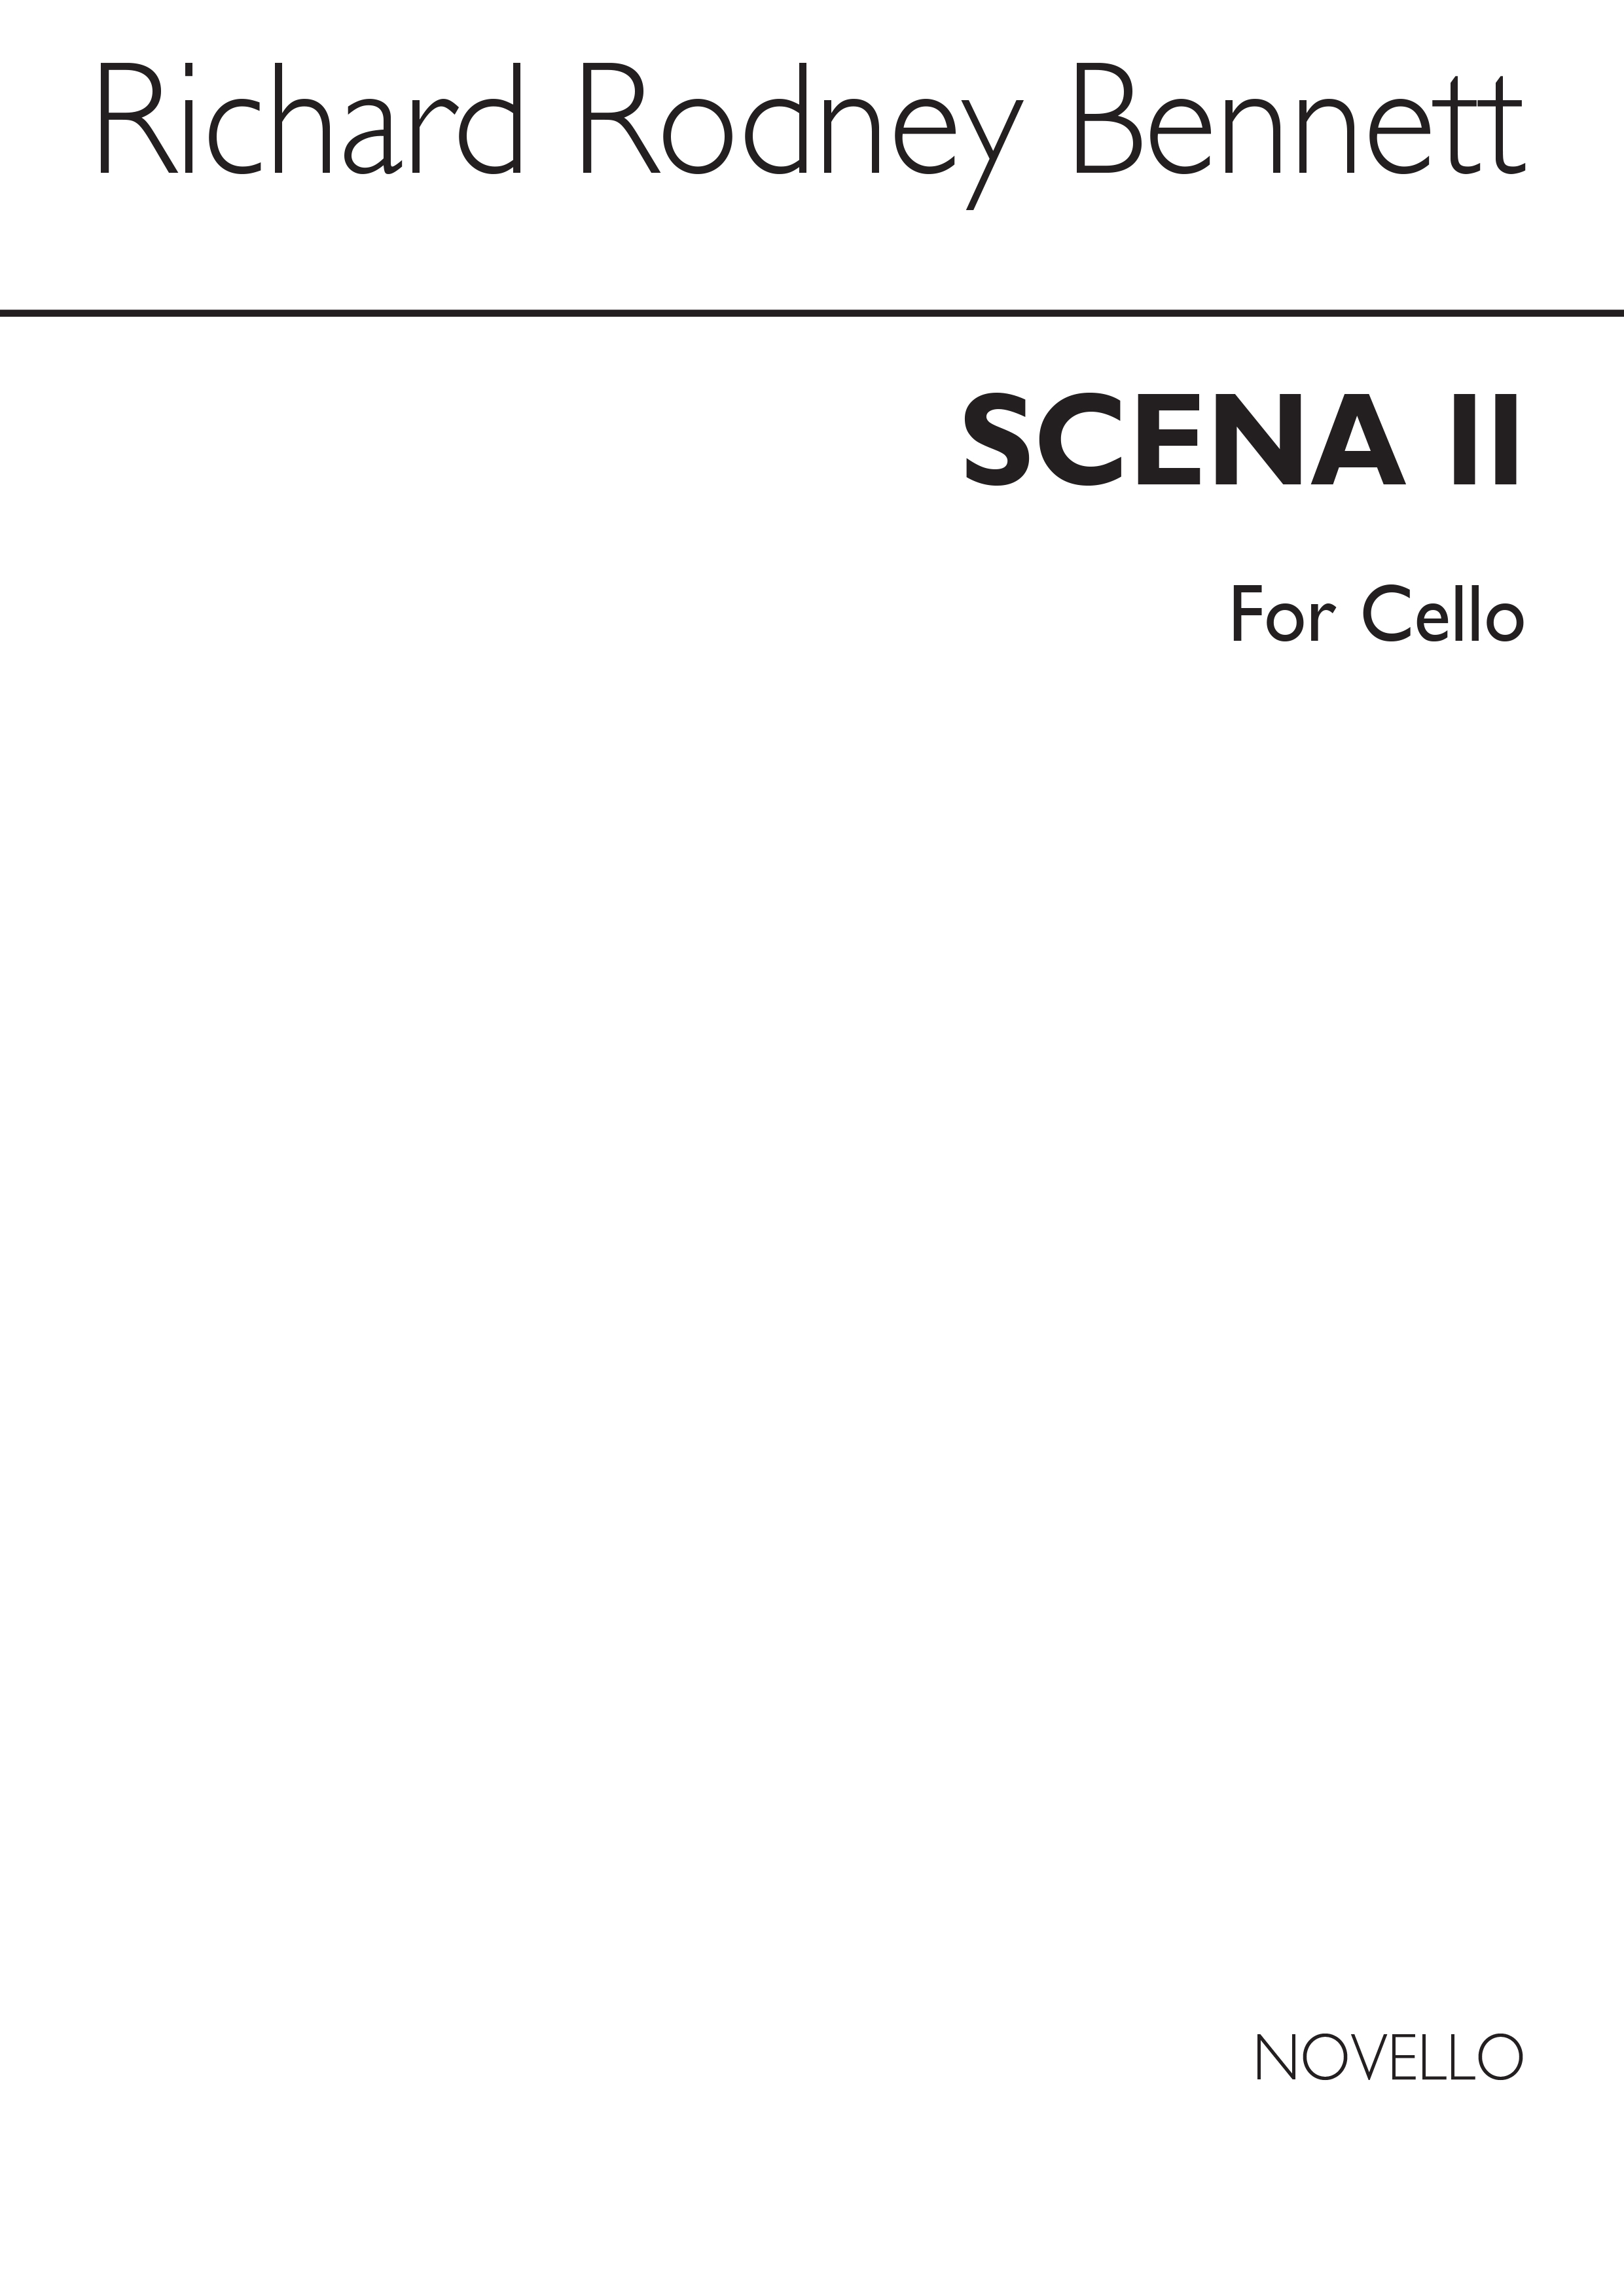 RR Bennett: Scena II for Cello